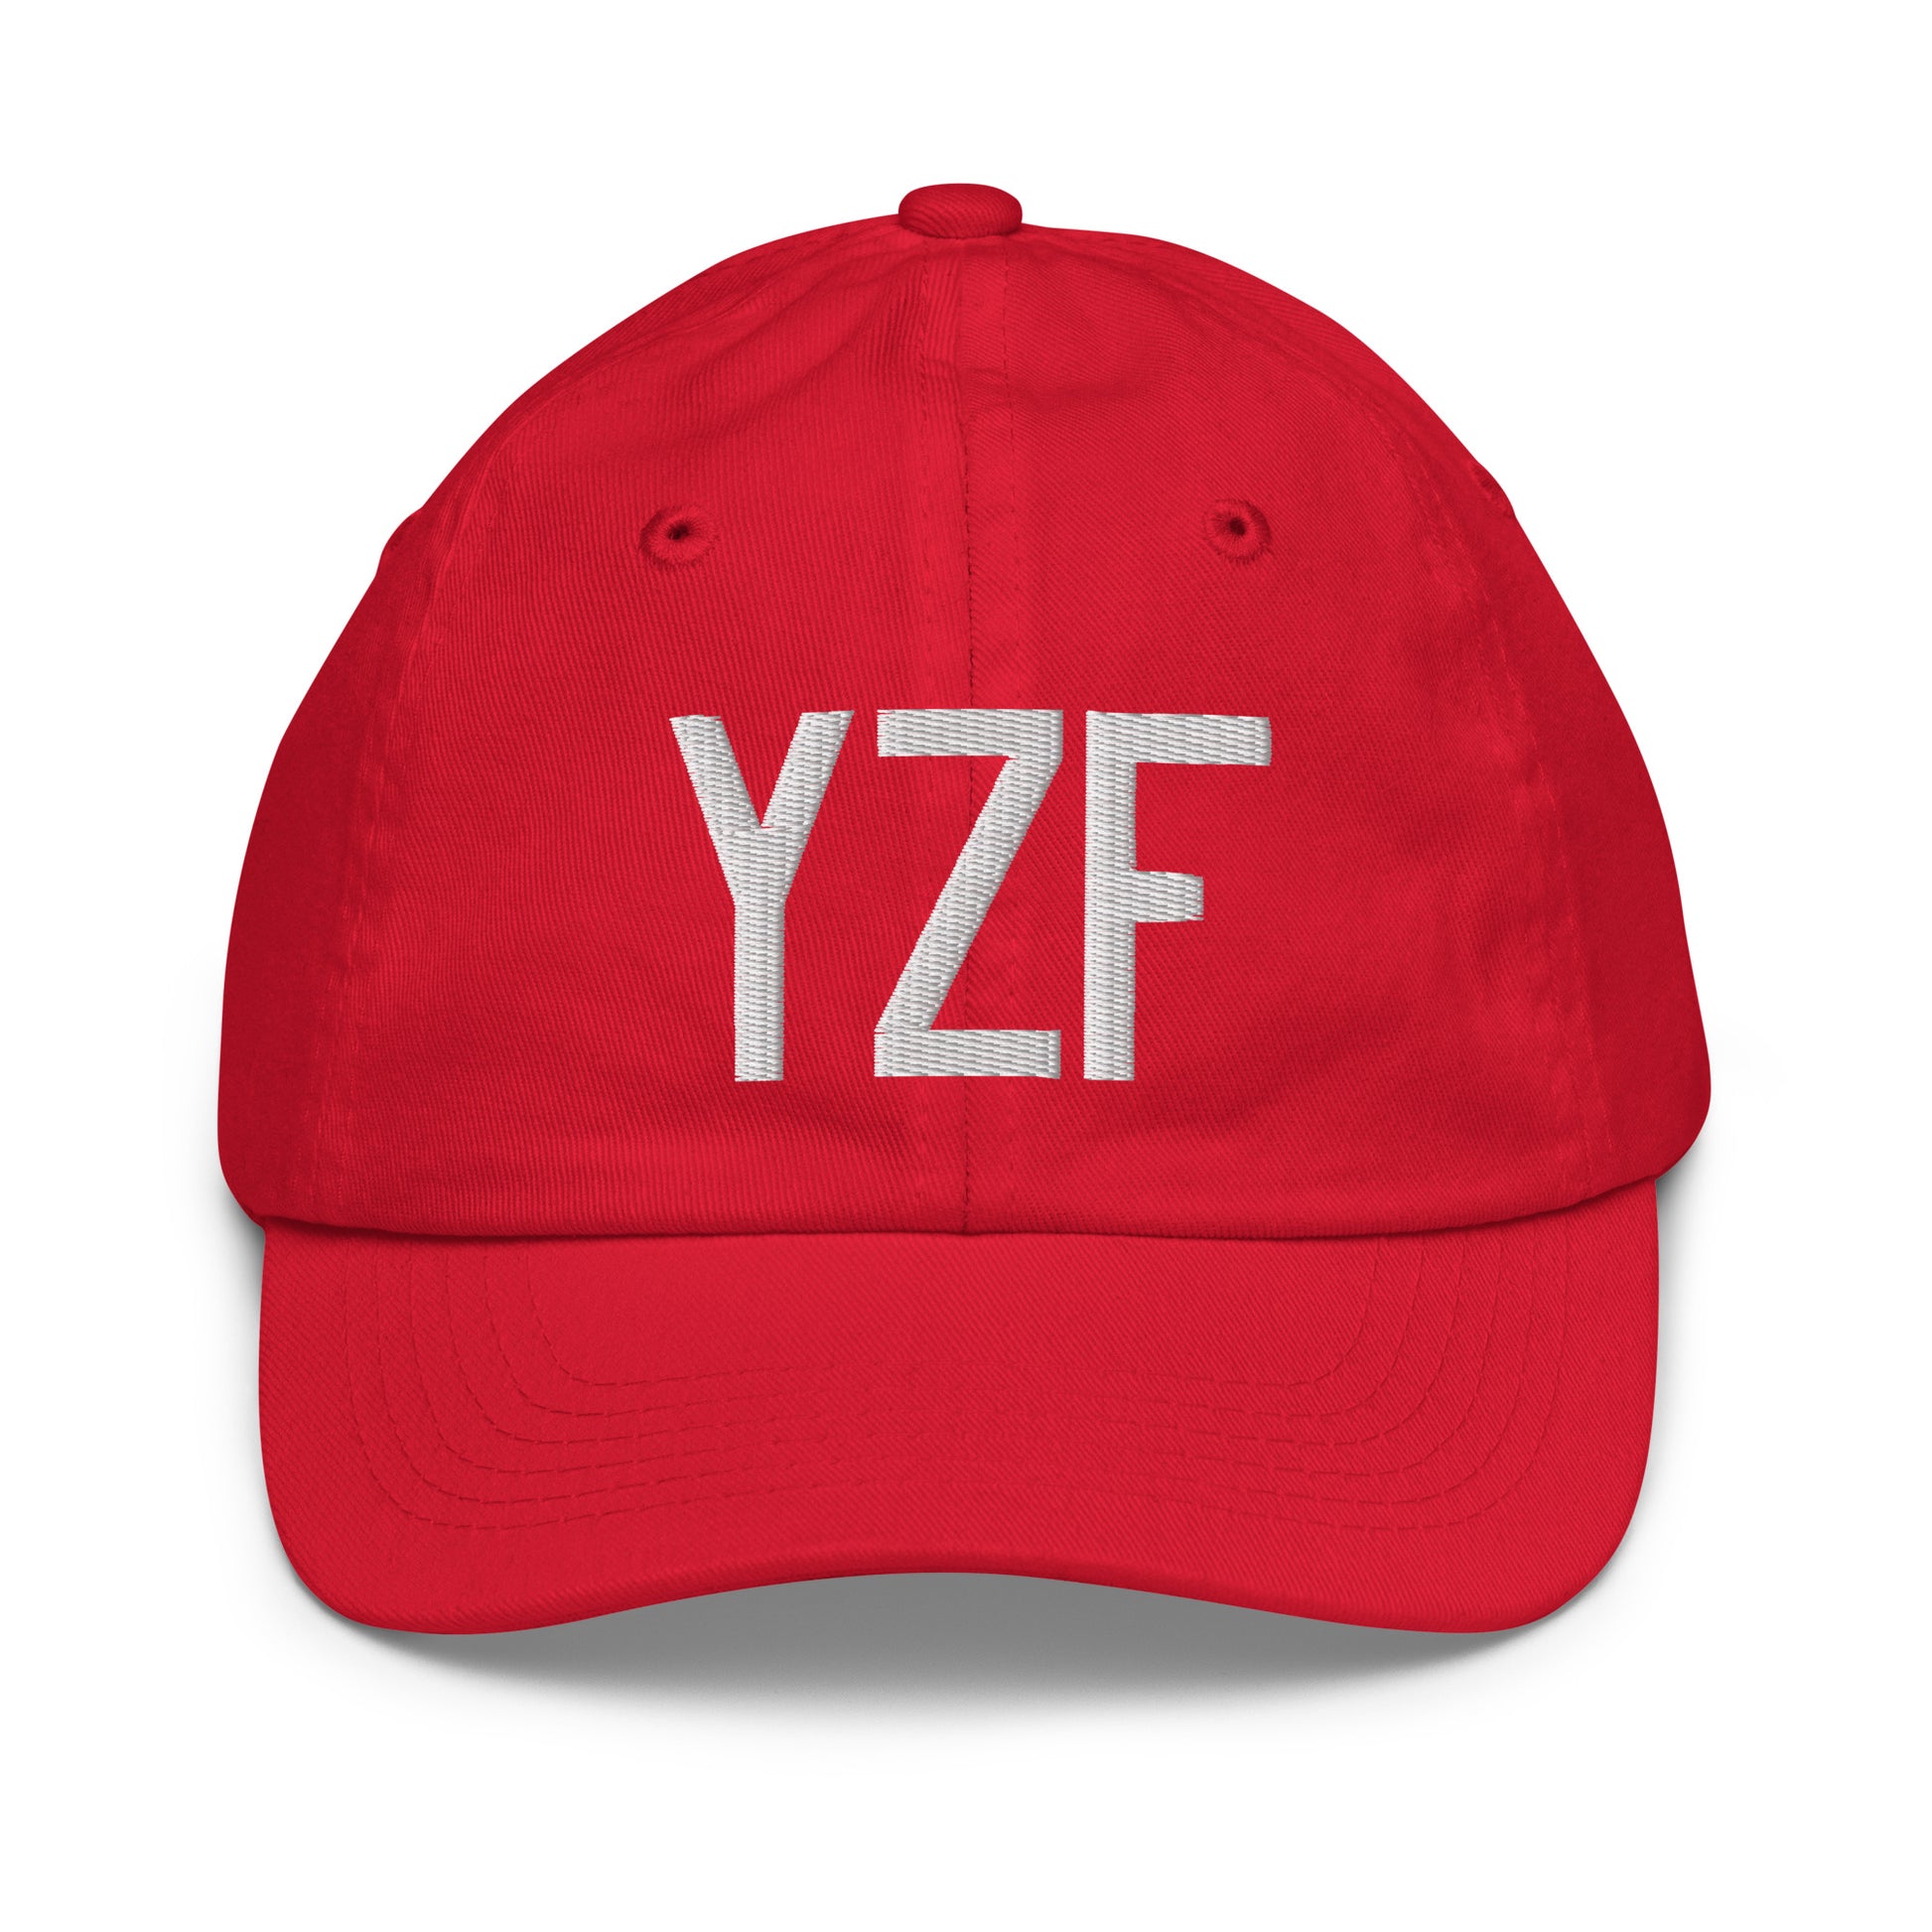 Airport Code Kid's Baseball Cap - White • YZF Yellowknife • YHM Designs - Image 17